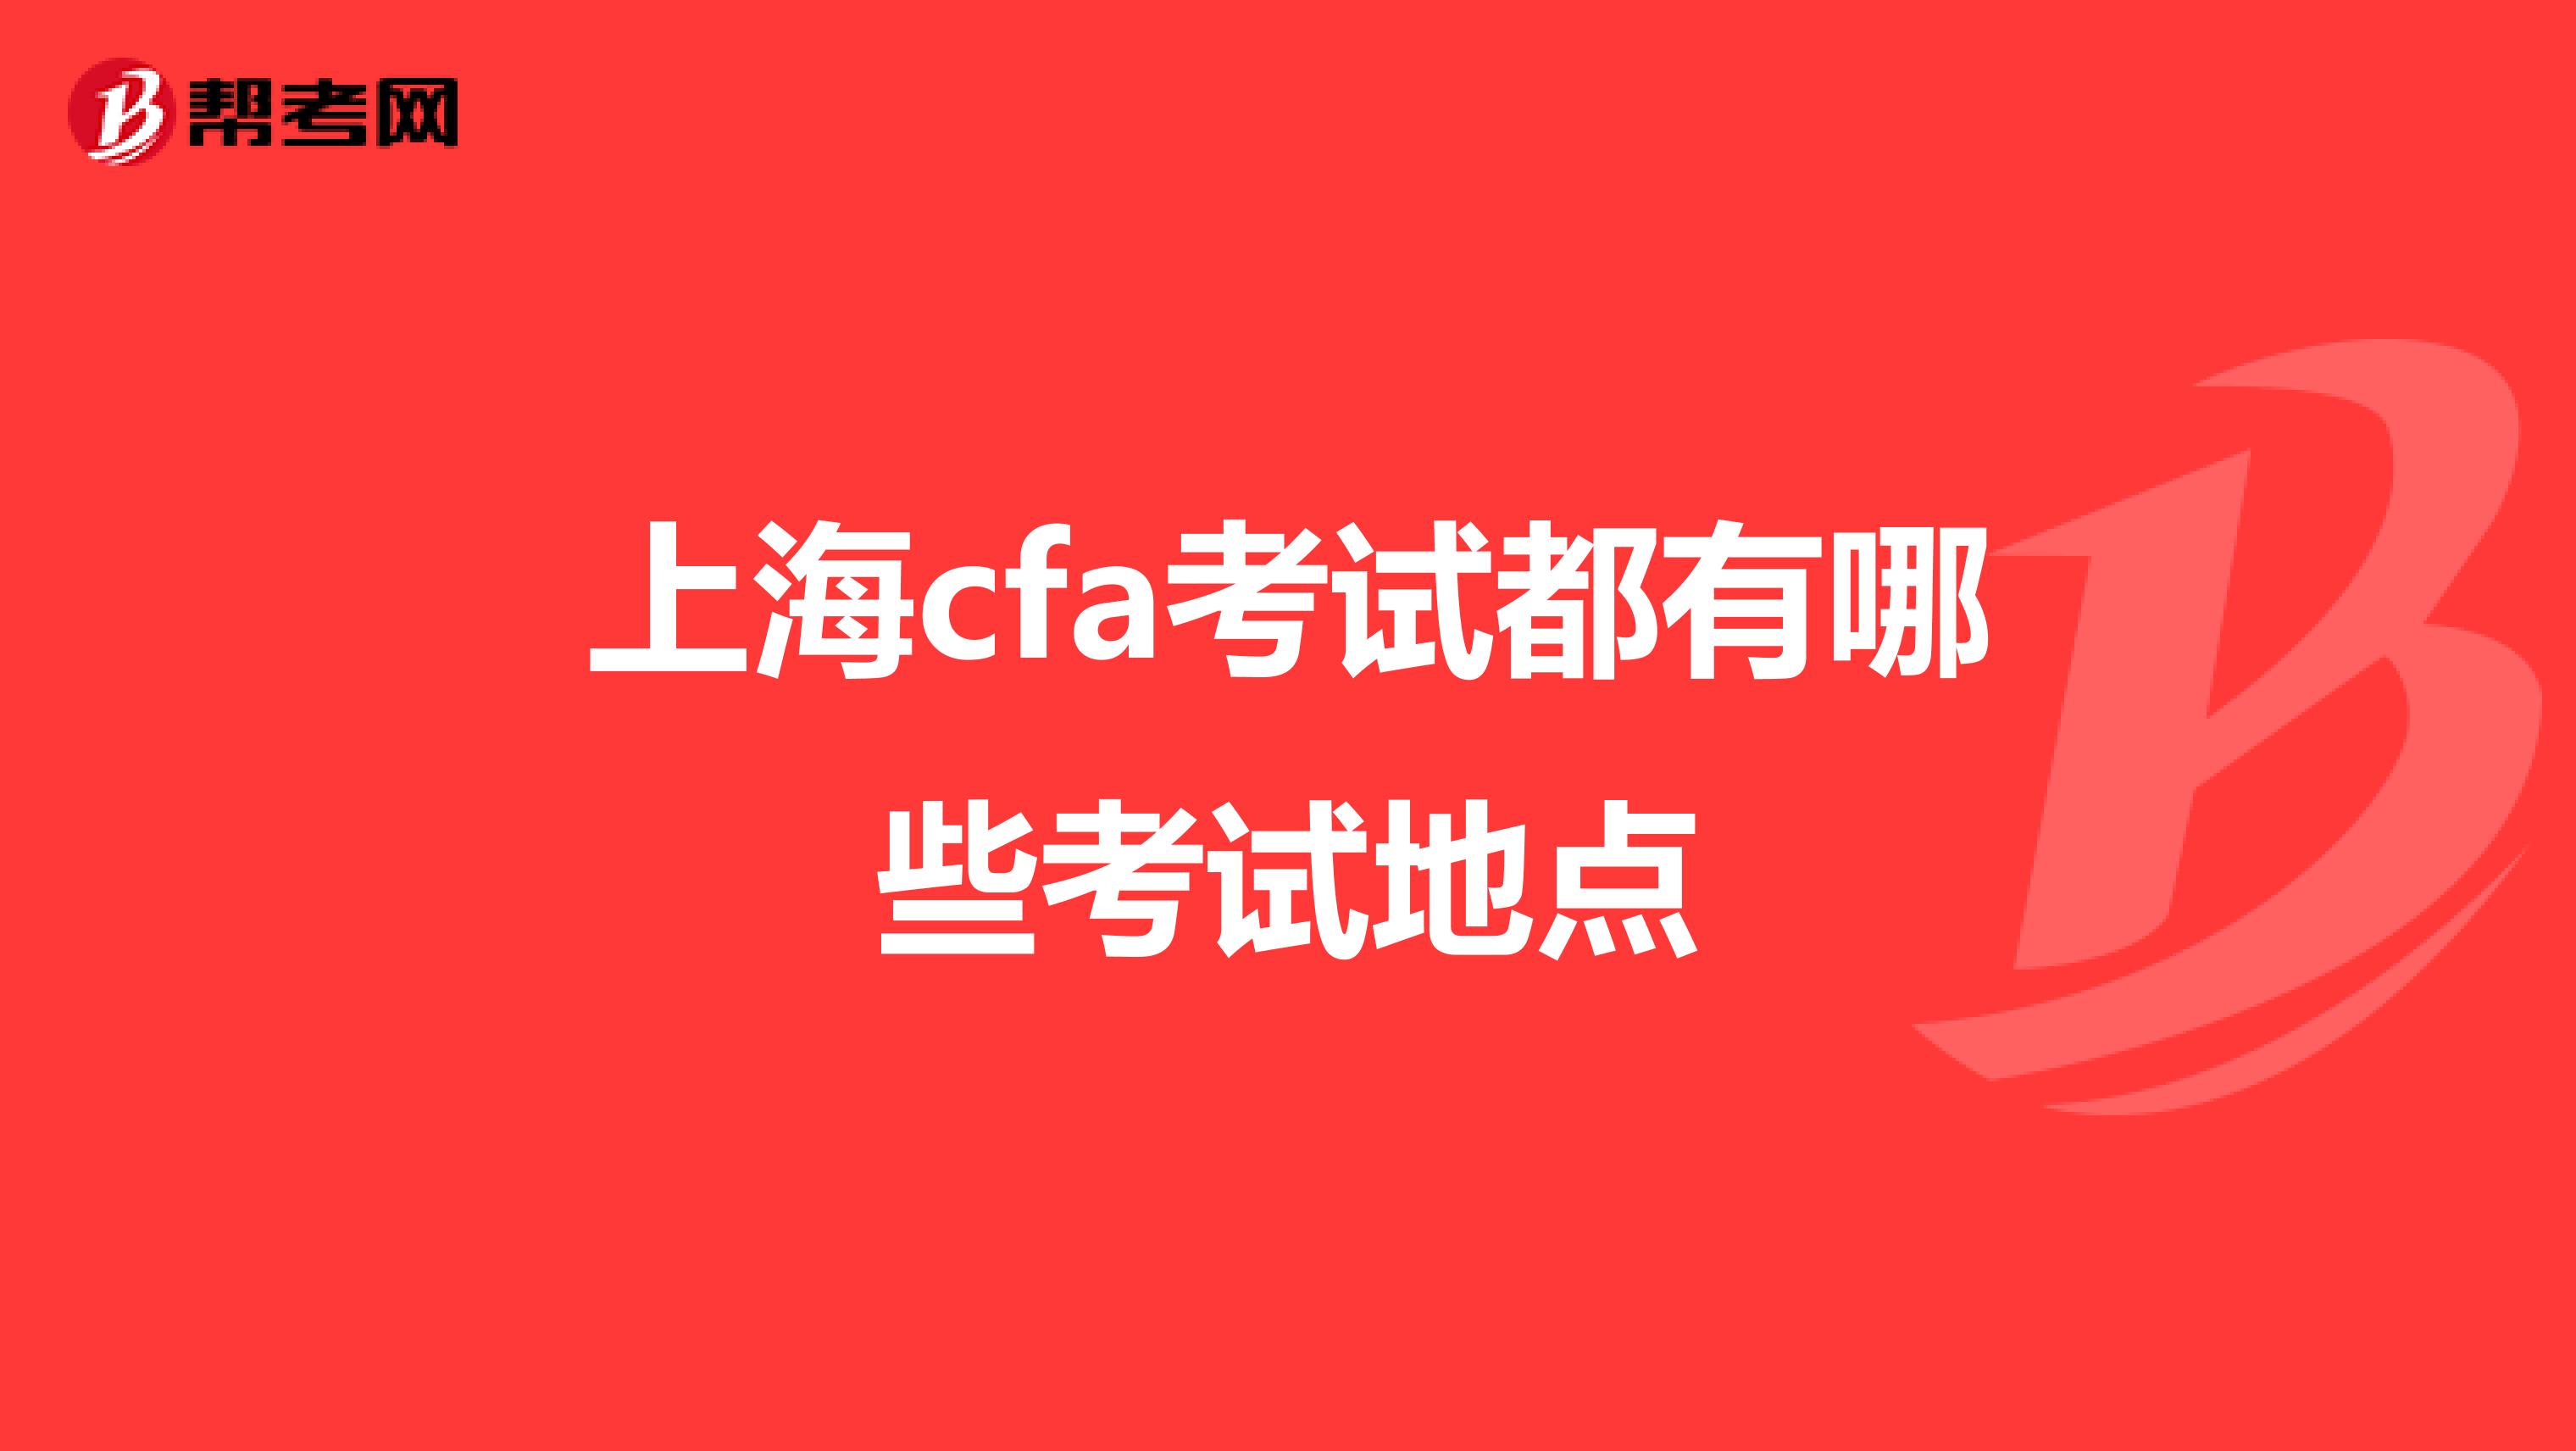 上海cfa考试都有哪些考试地点